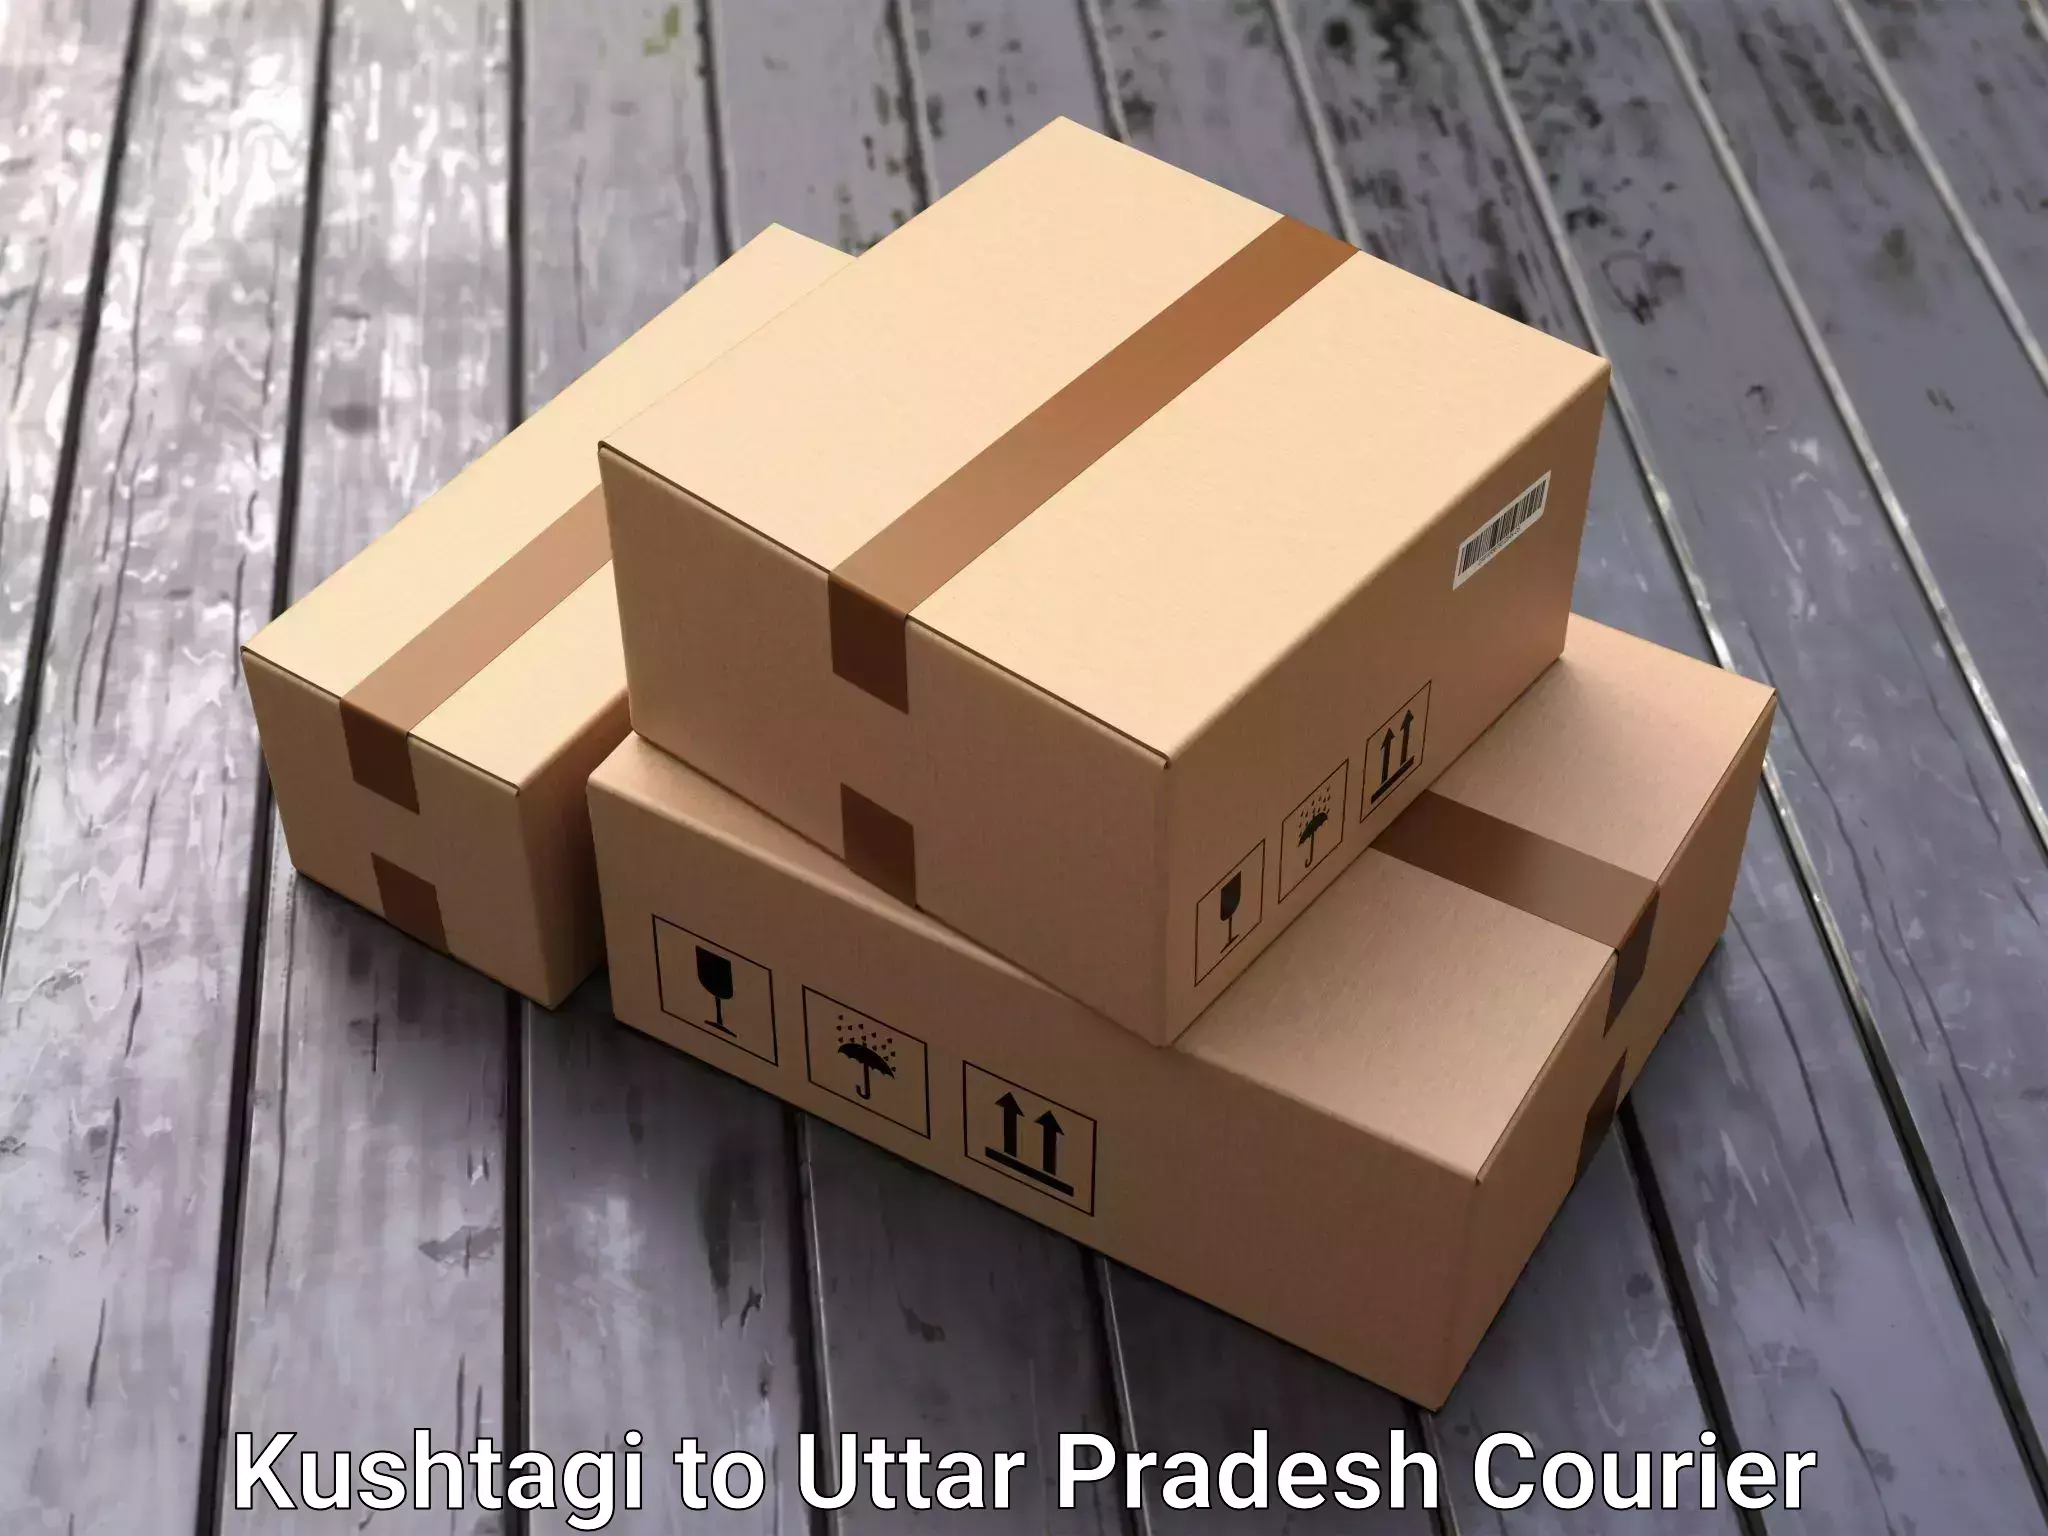 Household moving experts Kushtagi to Agra